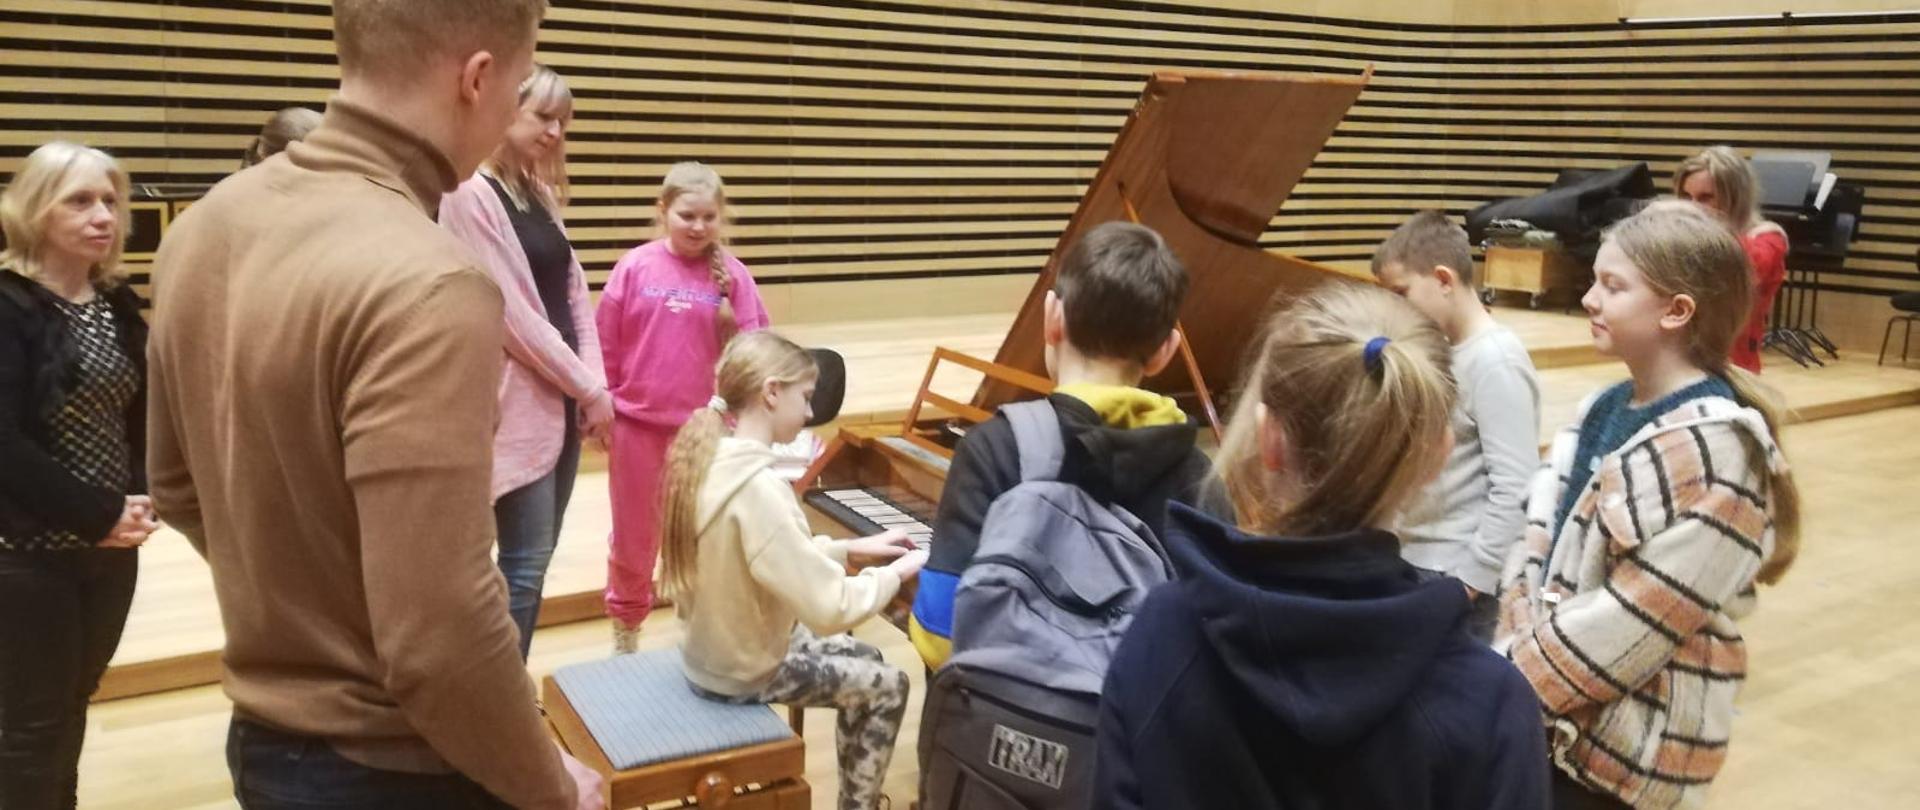 Dziewczynka gra na brązowym fortepianie z czarno-białą klawiaturą (kolory na odwrót jak we współczesnych fortepianach), dookoła ze wszystkich stron fortepianu stoi sześcioro dzieci i trójka dorosłych.